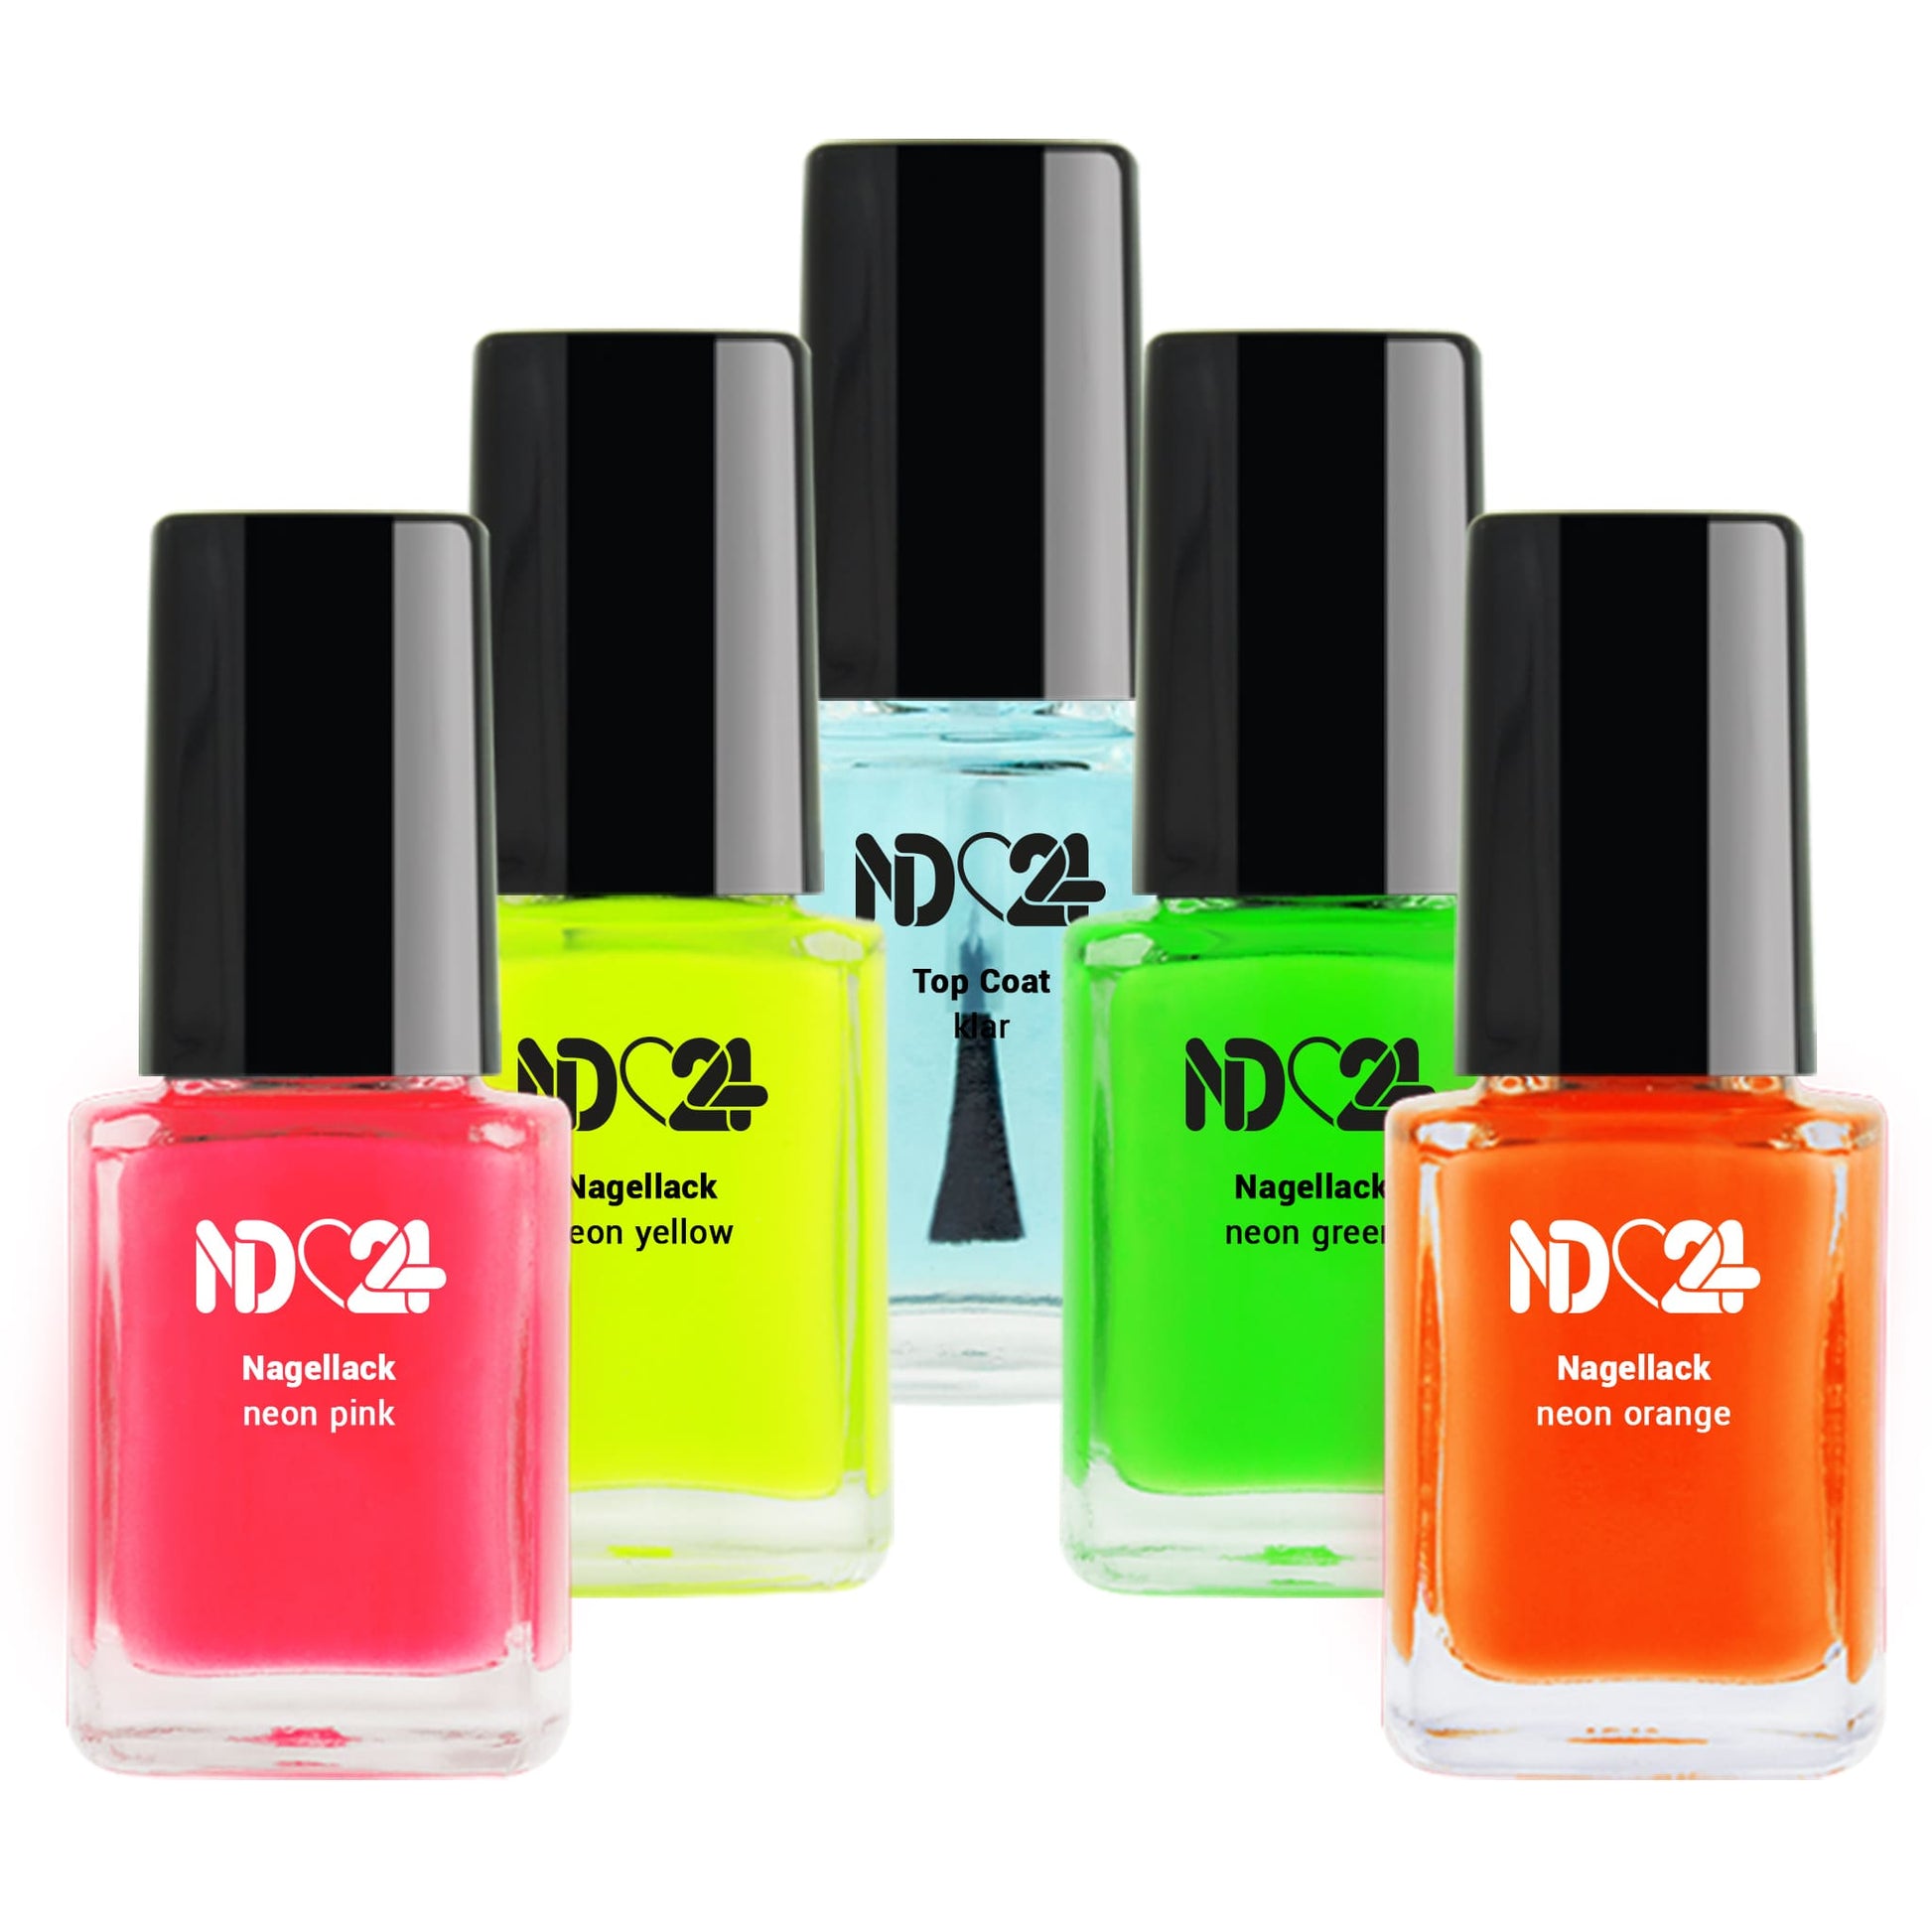 Neon Nagellack Set günstig bestellen bei 😍 ND24 NailDesign | Nagellacke